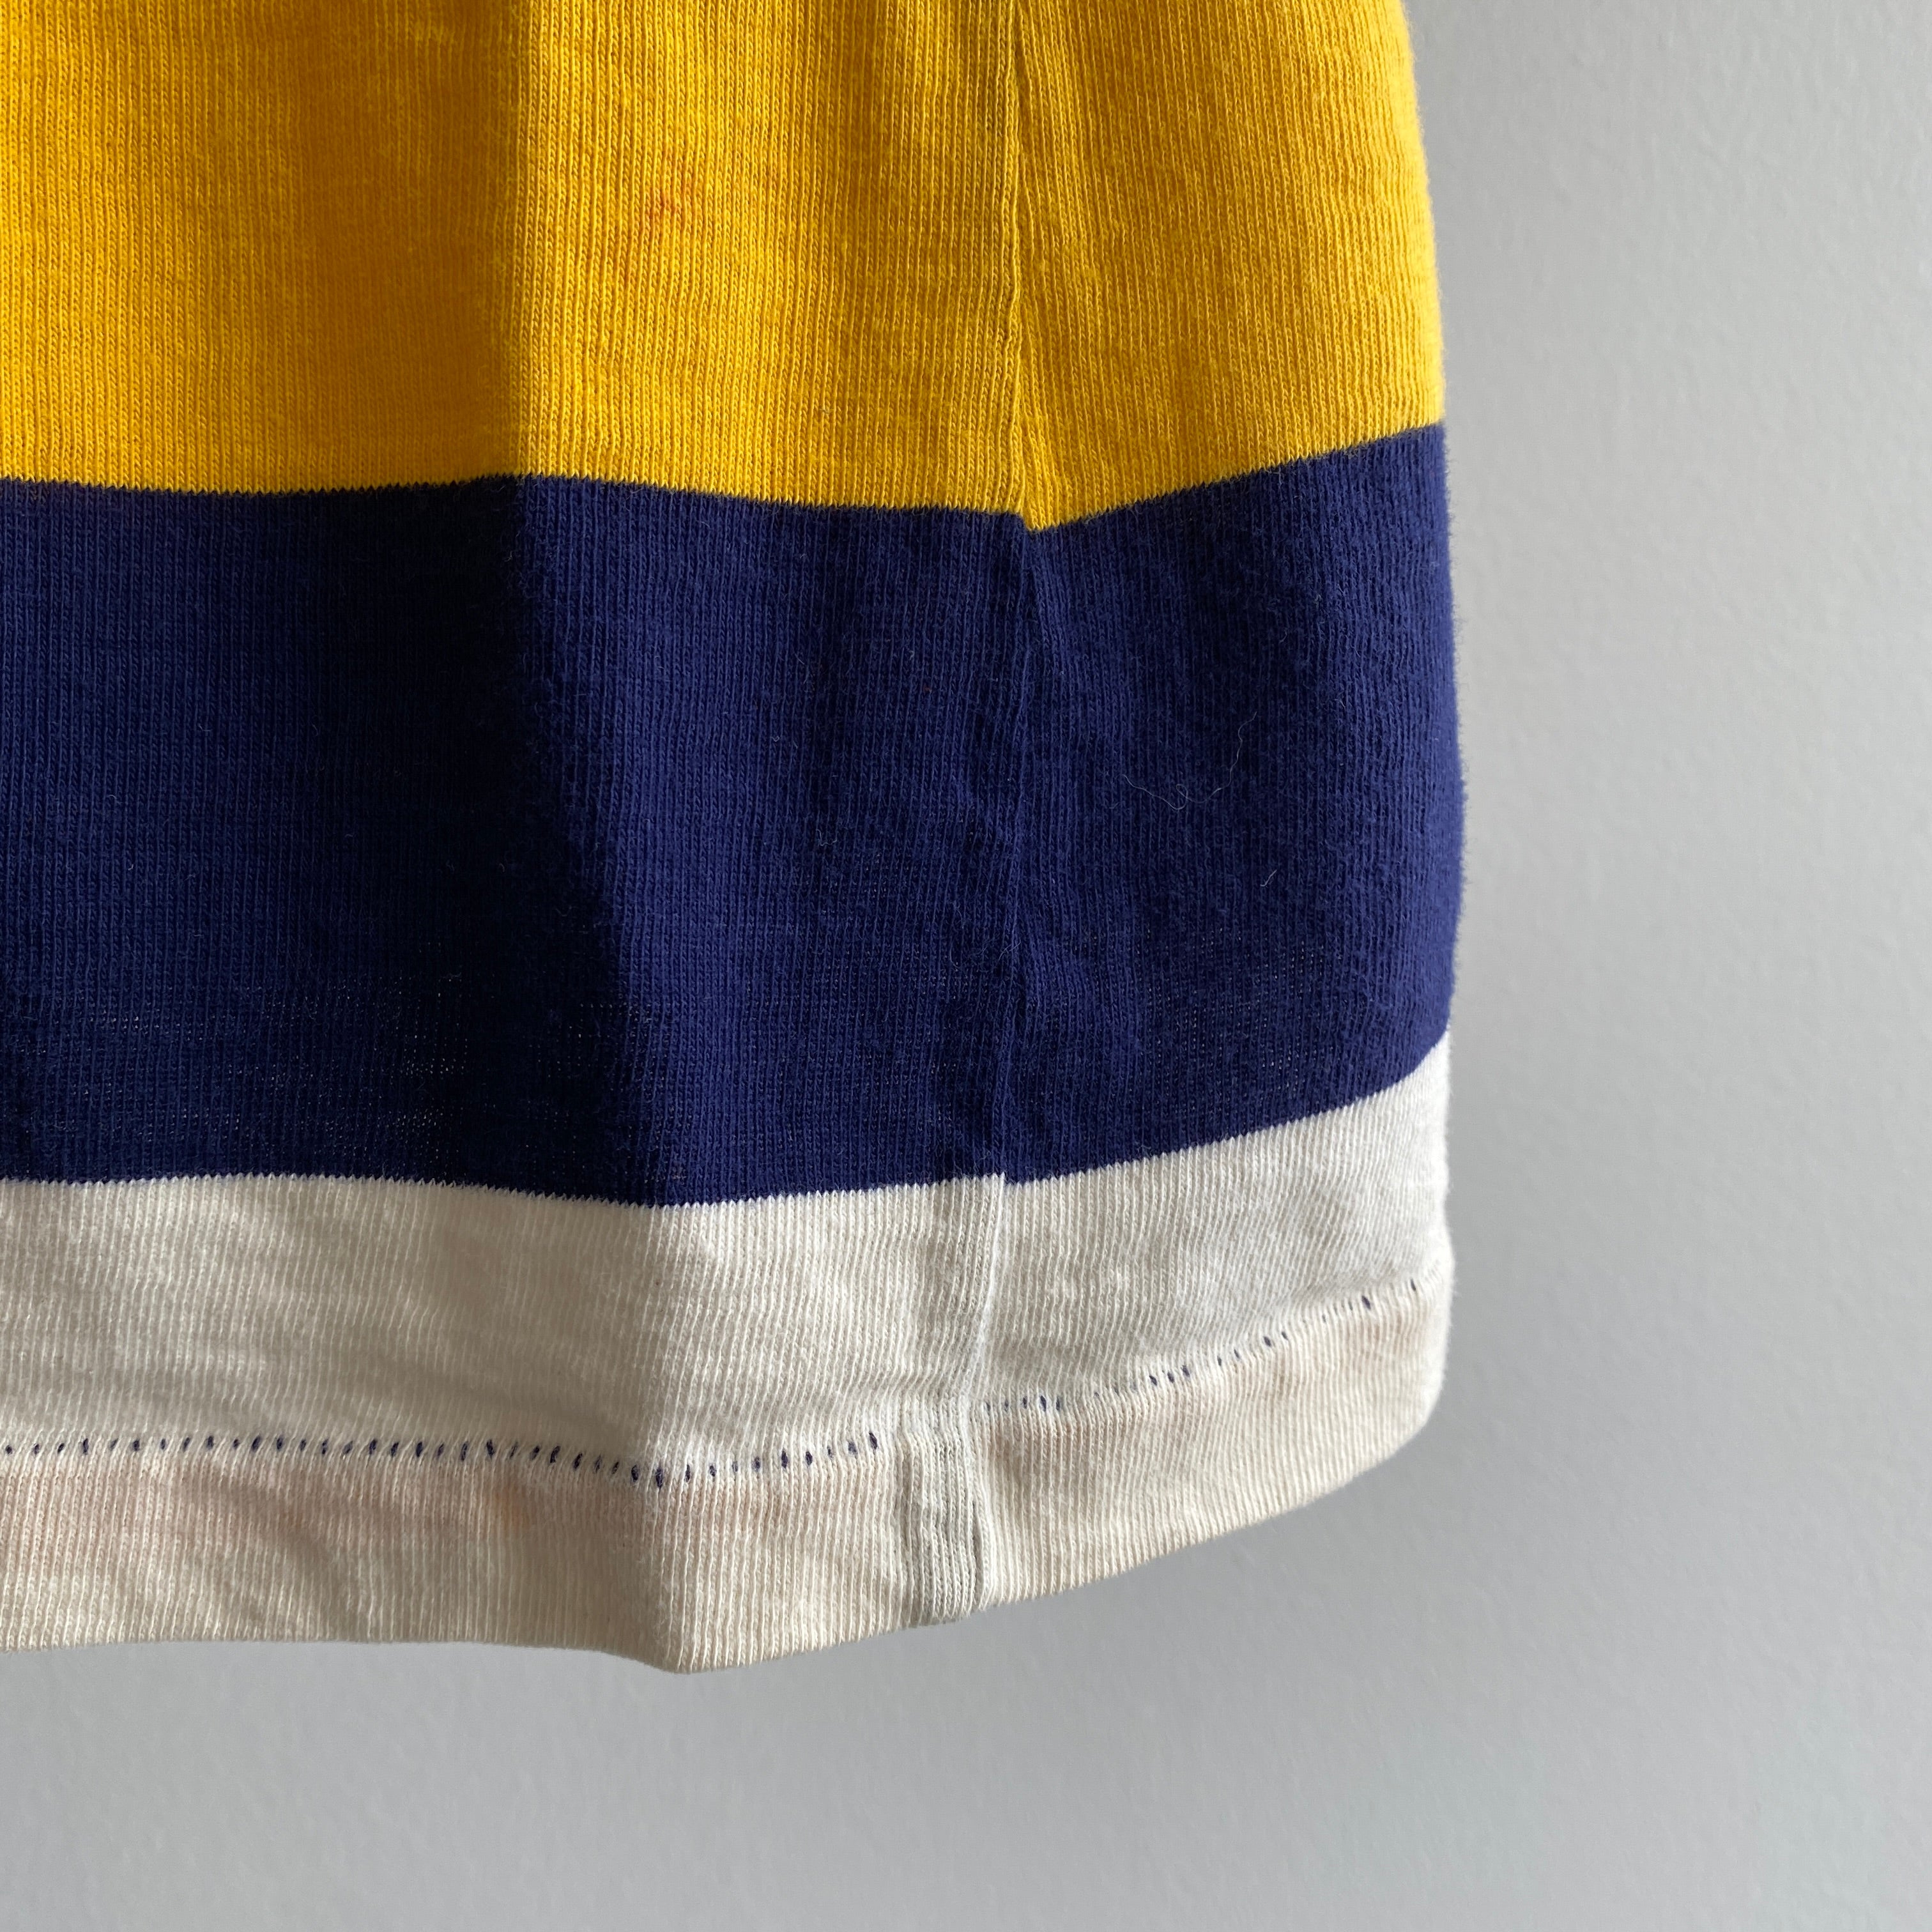 Polo en coton rayé bleu marine et jaune des années 1970 100 % coton